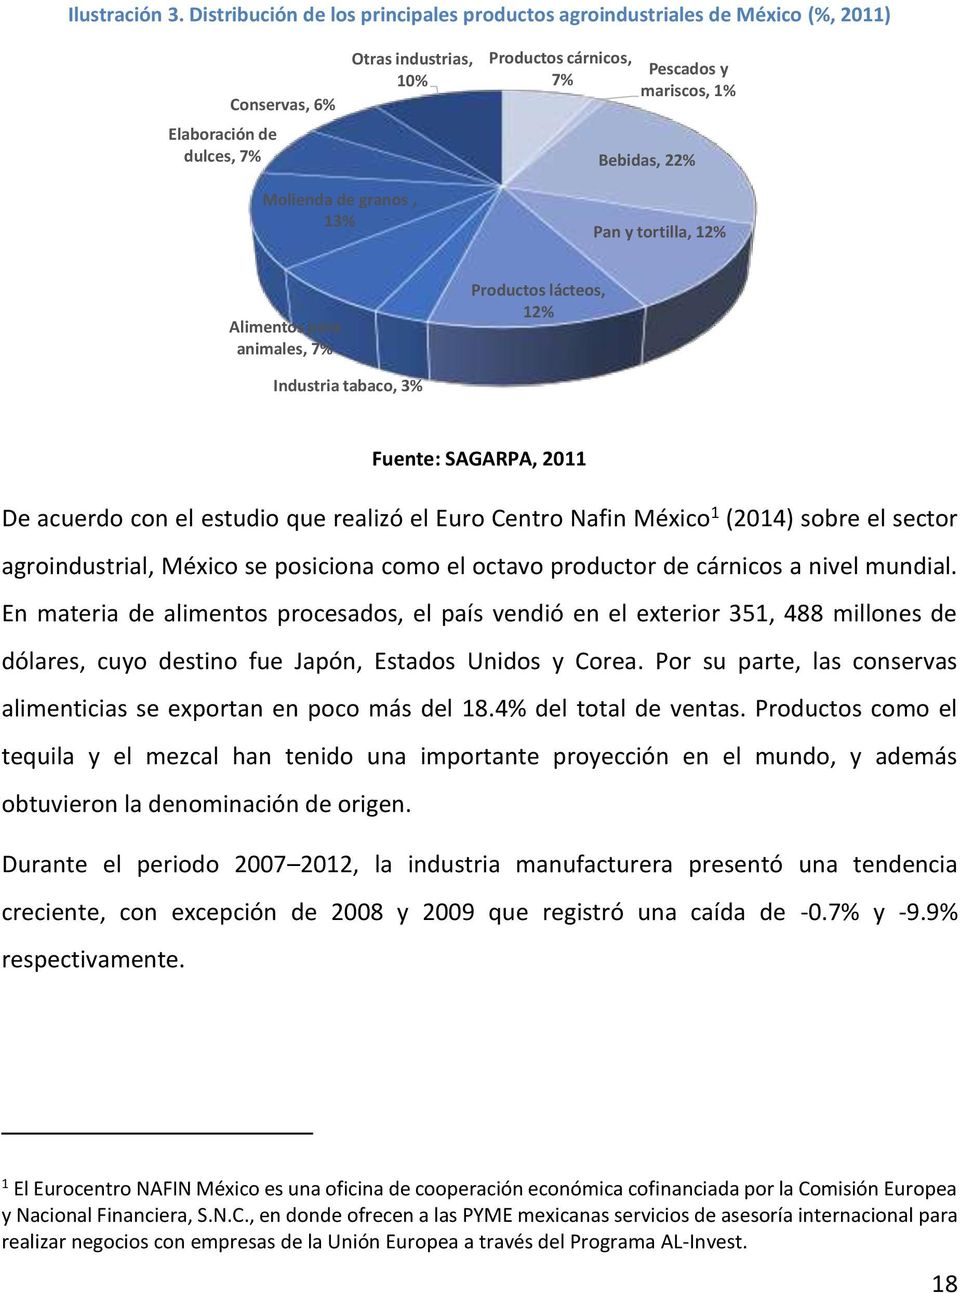 tortilla, 12% Alimentos para animales, 7% Productos lácteos, 12% Industria tabaco, 3% Fuente: SAGARPA (2011), Indicadores estatales agroeconómicos, p. 5.